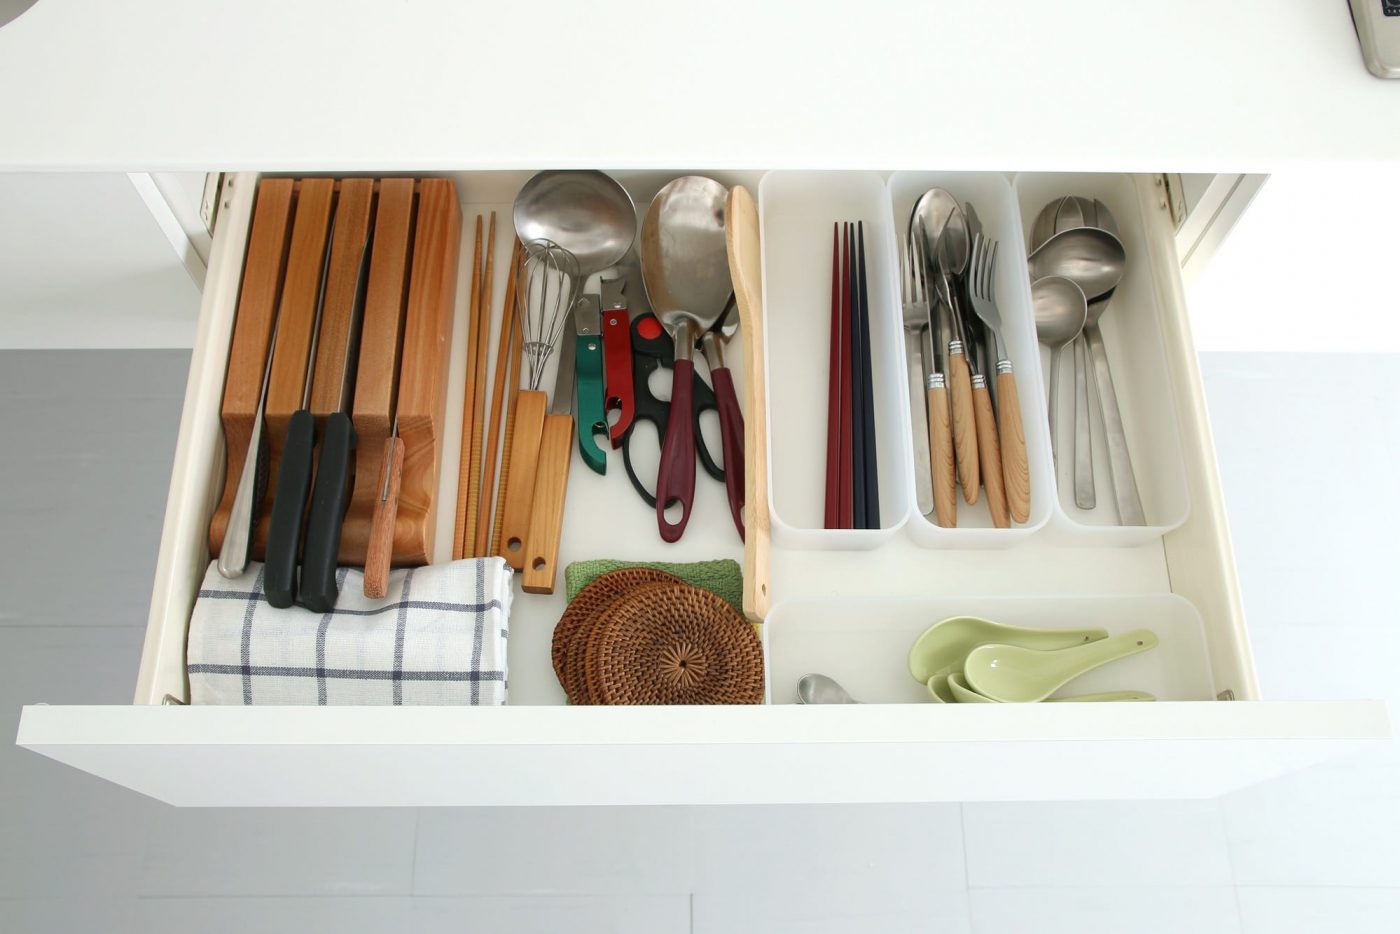 <p>キッチン道具の収納に便利な引き出し。（本体とコンロサイズによってサイズが変わります）</p>
